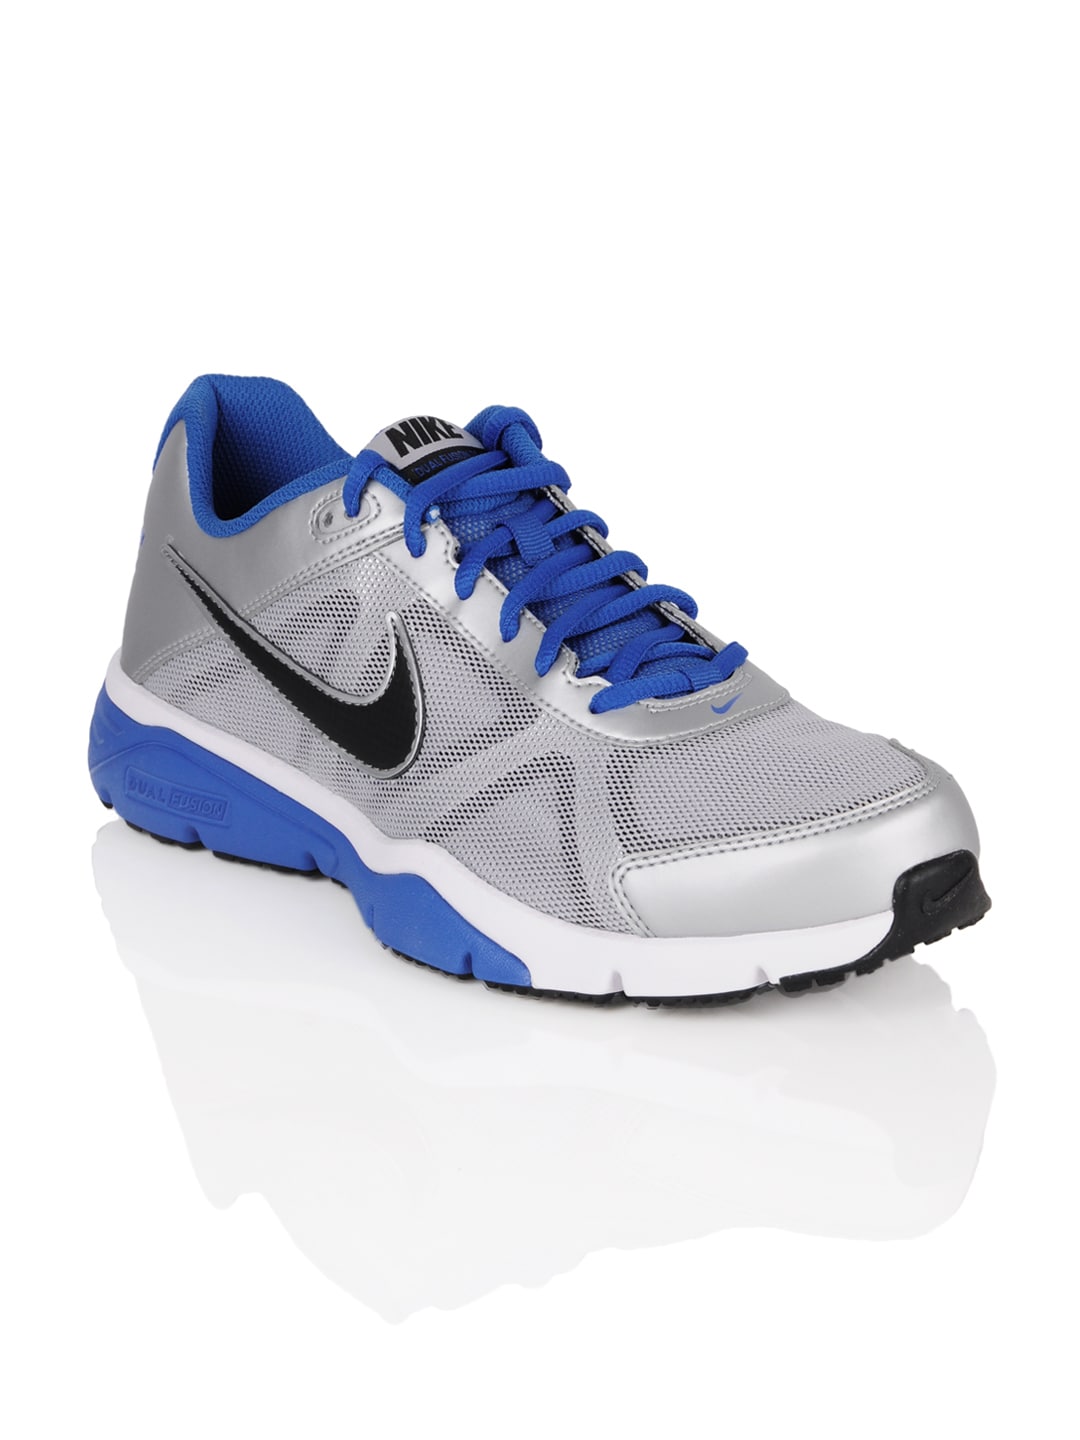 Nike Men Dual Fusion TR III Grey Sports Shoes